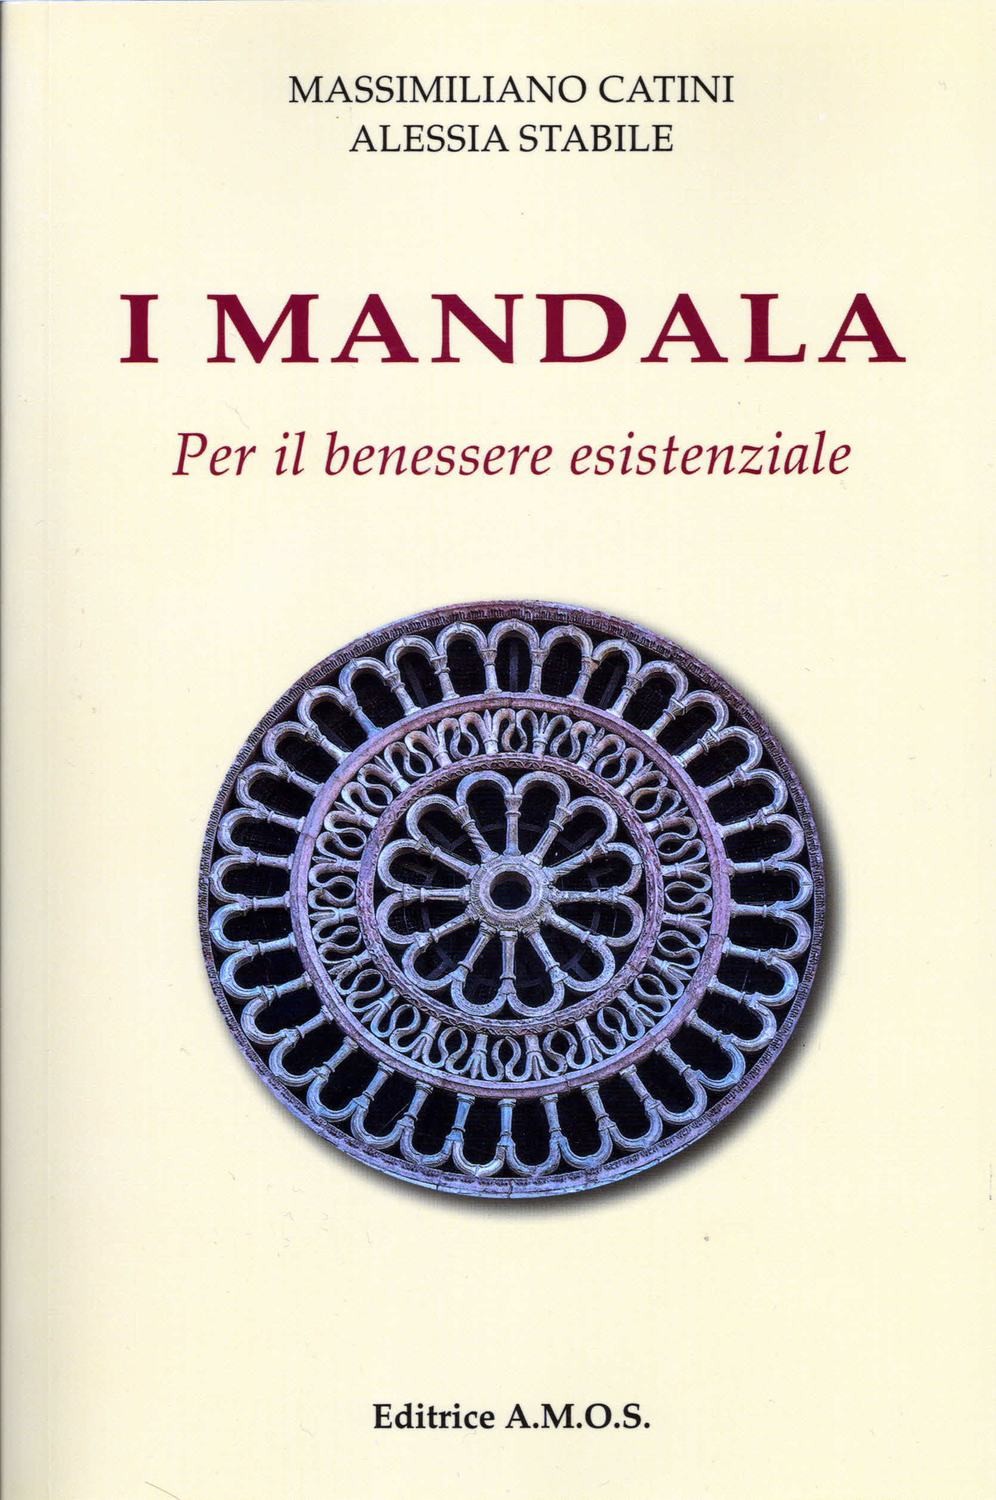 I Mandala. Per il benessere esistenziale.
Massimiliano Catini